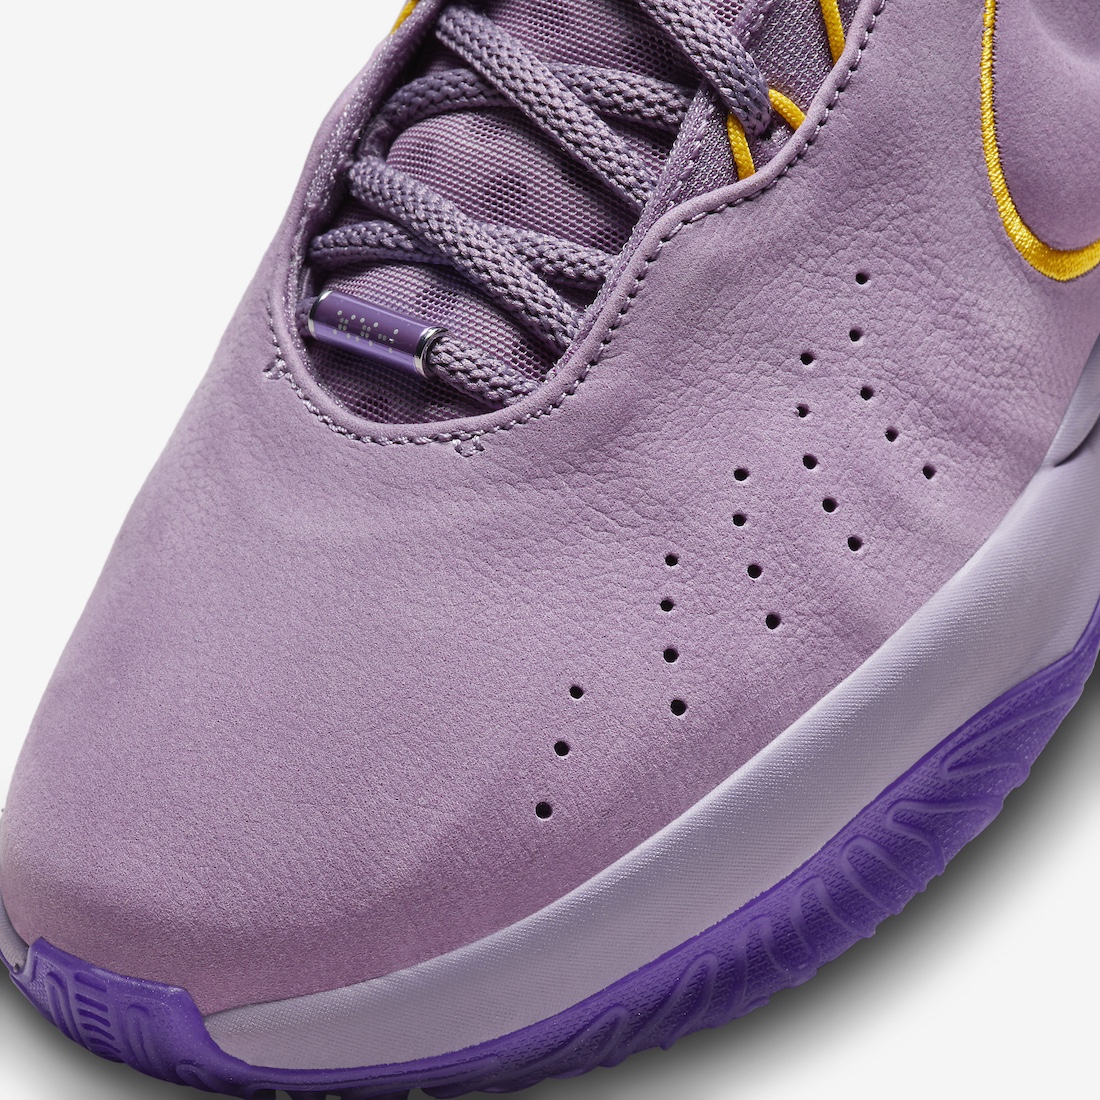 Nike LeBron 21 Violet Dust Purple Rain FV2345 500 6